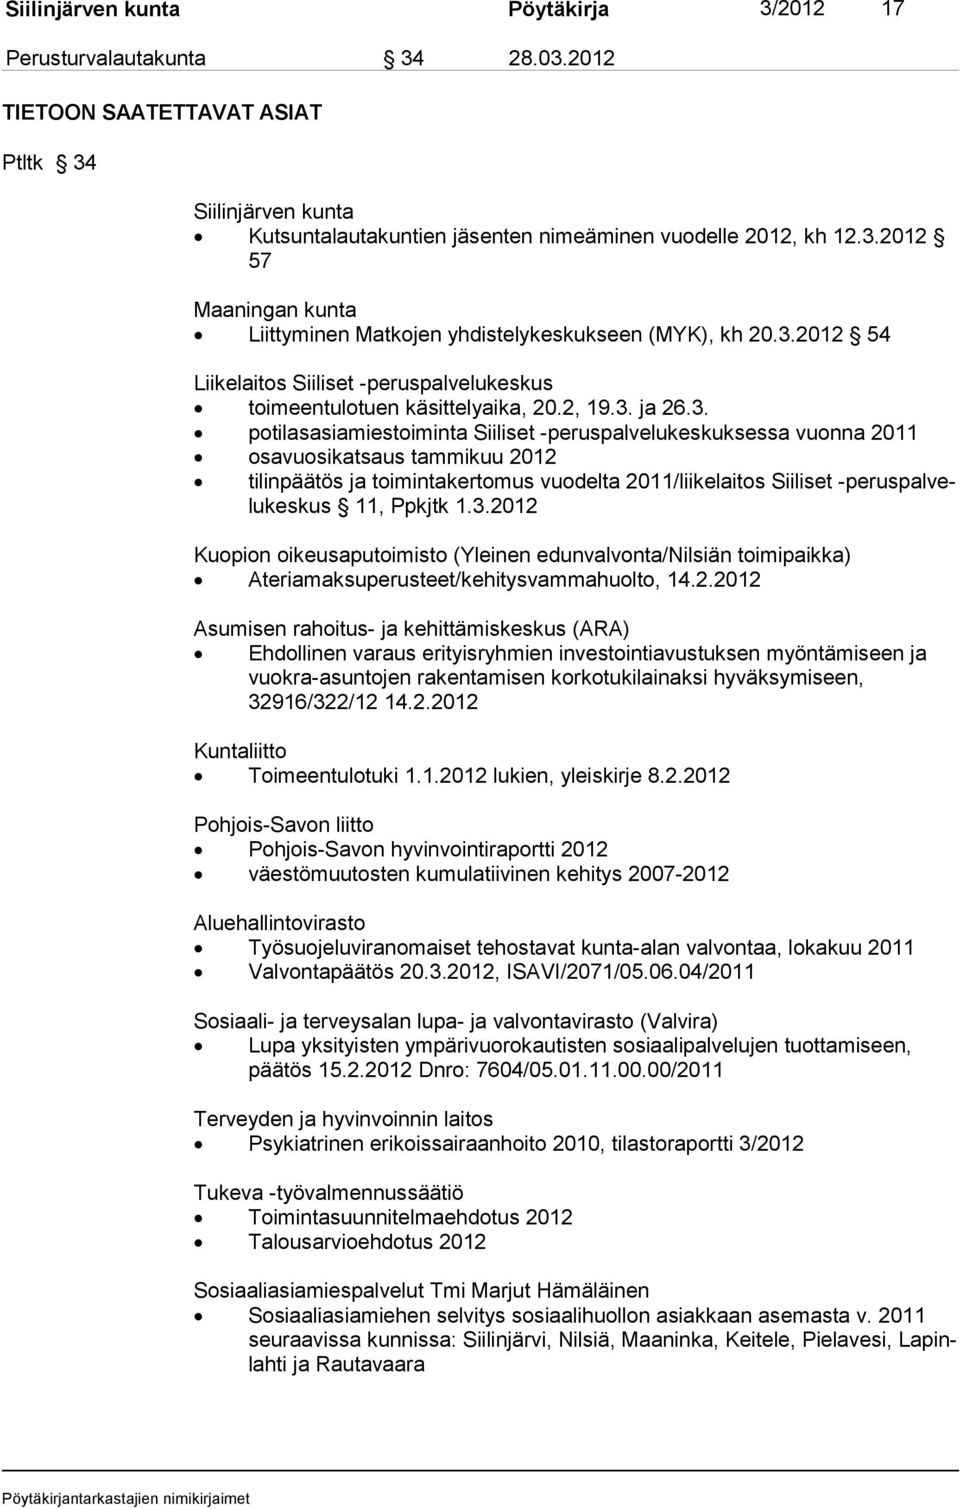 2012 tilinpäätös ja toimintakertomus vuodelta 2011/liikelaitos Siiliset -peruspalvelukeskus 11, Ppkjtk 1.3.